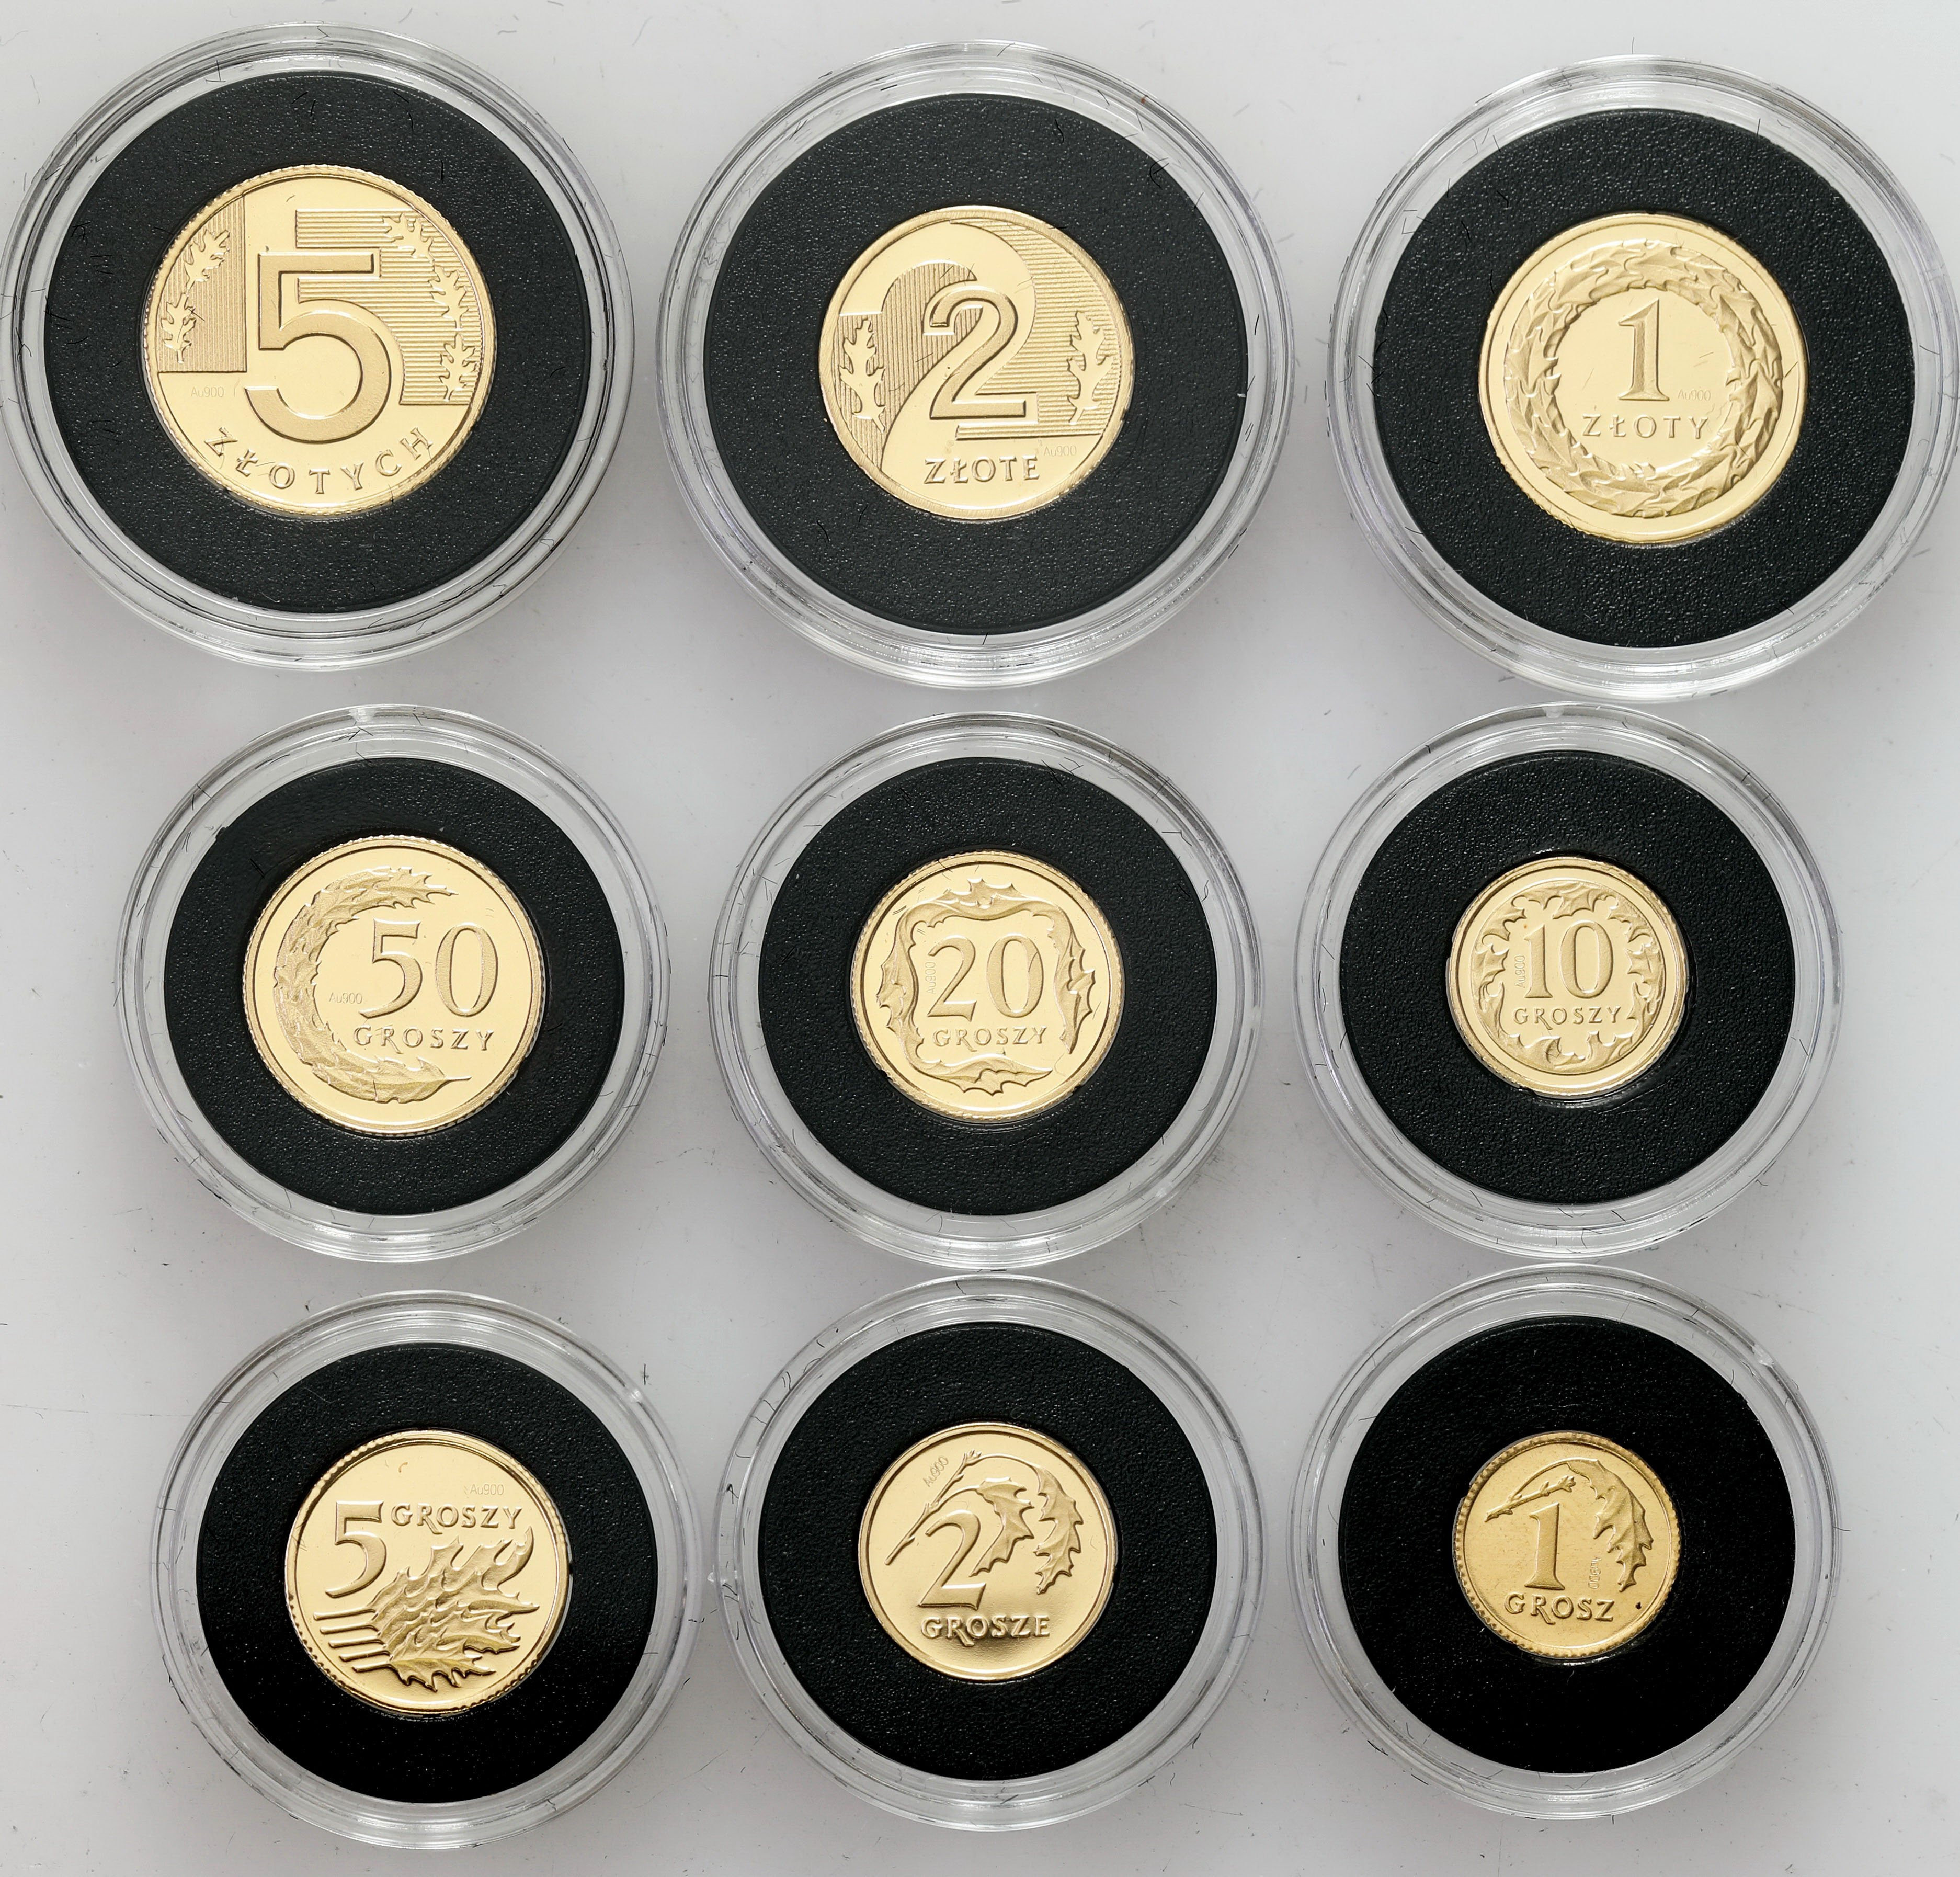 Miniatury polskich monet obiegowych 1 grosz do 5 złotych 2008 - ZŁOTO